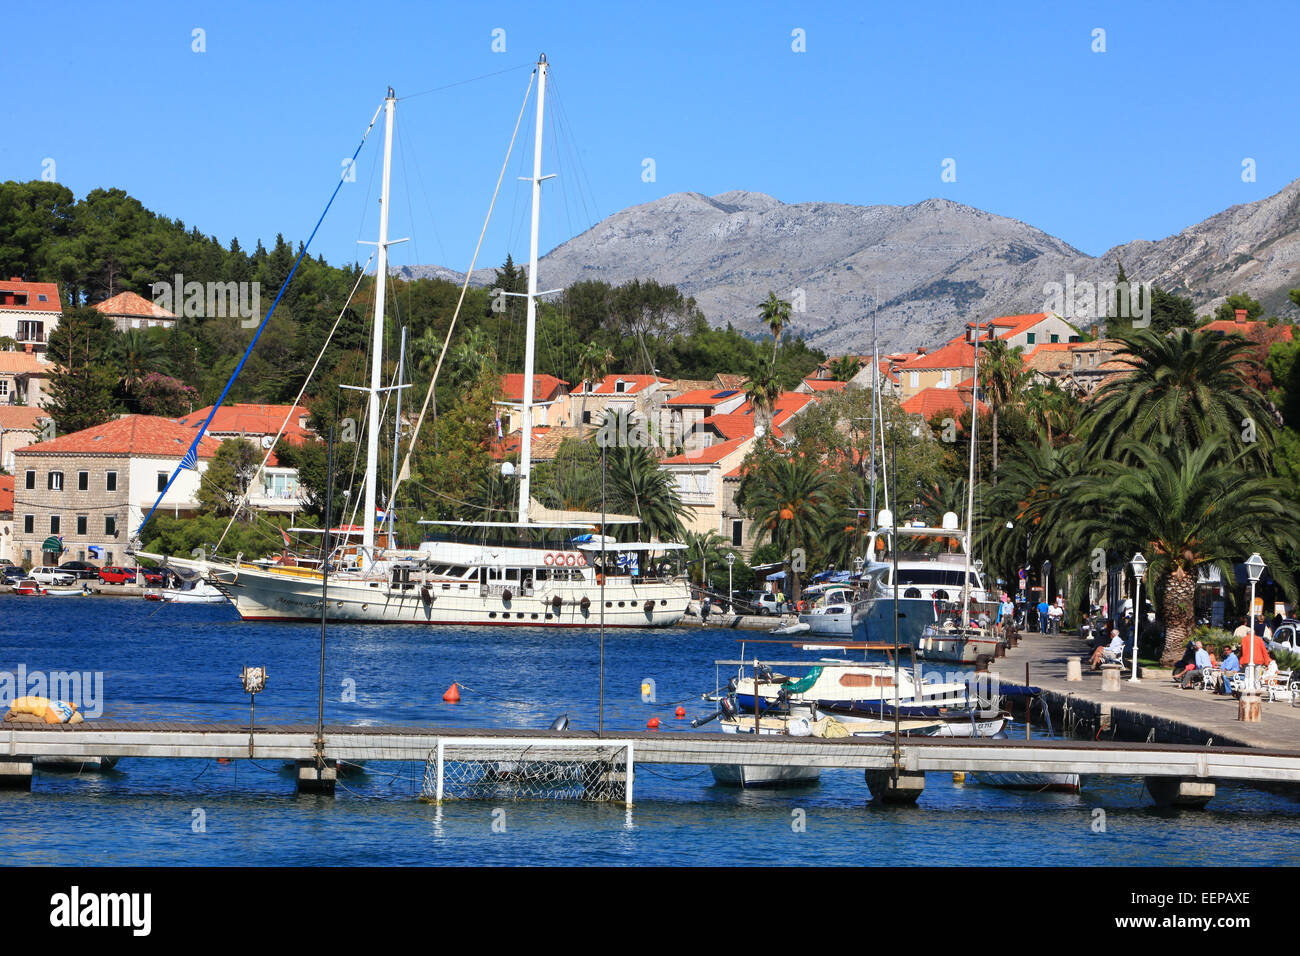 Cavtat, Croatie, port avec des bateaux dans le port et les yachts sur la mer Adreatic ; Europe centrale et de la Méditerranée. Banque D'Images